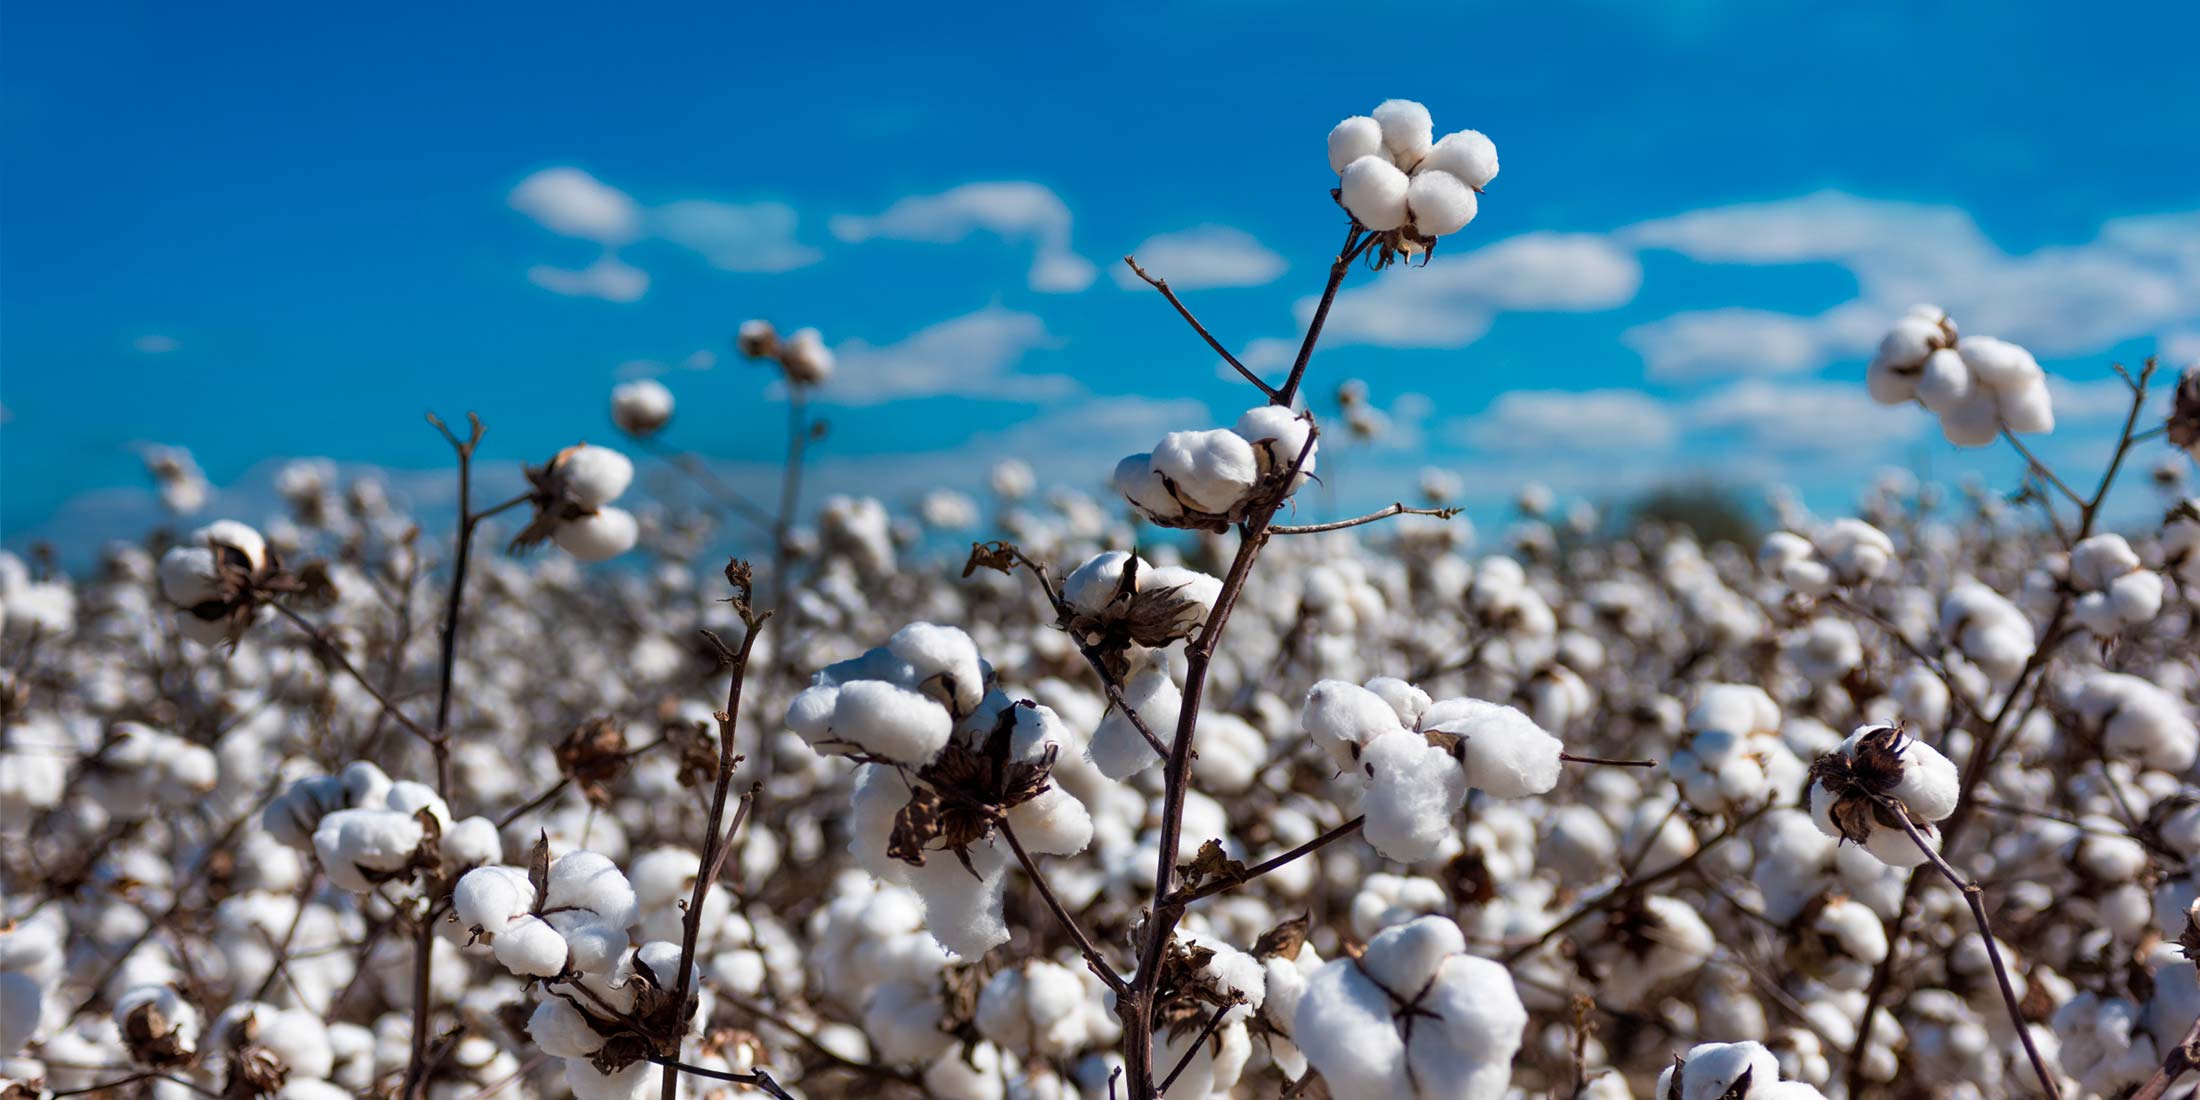 Thượng Hải đang mắc kẹt với số lượng hàng tồn kho Cotton lớn